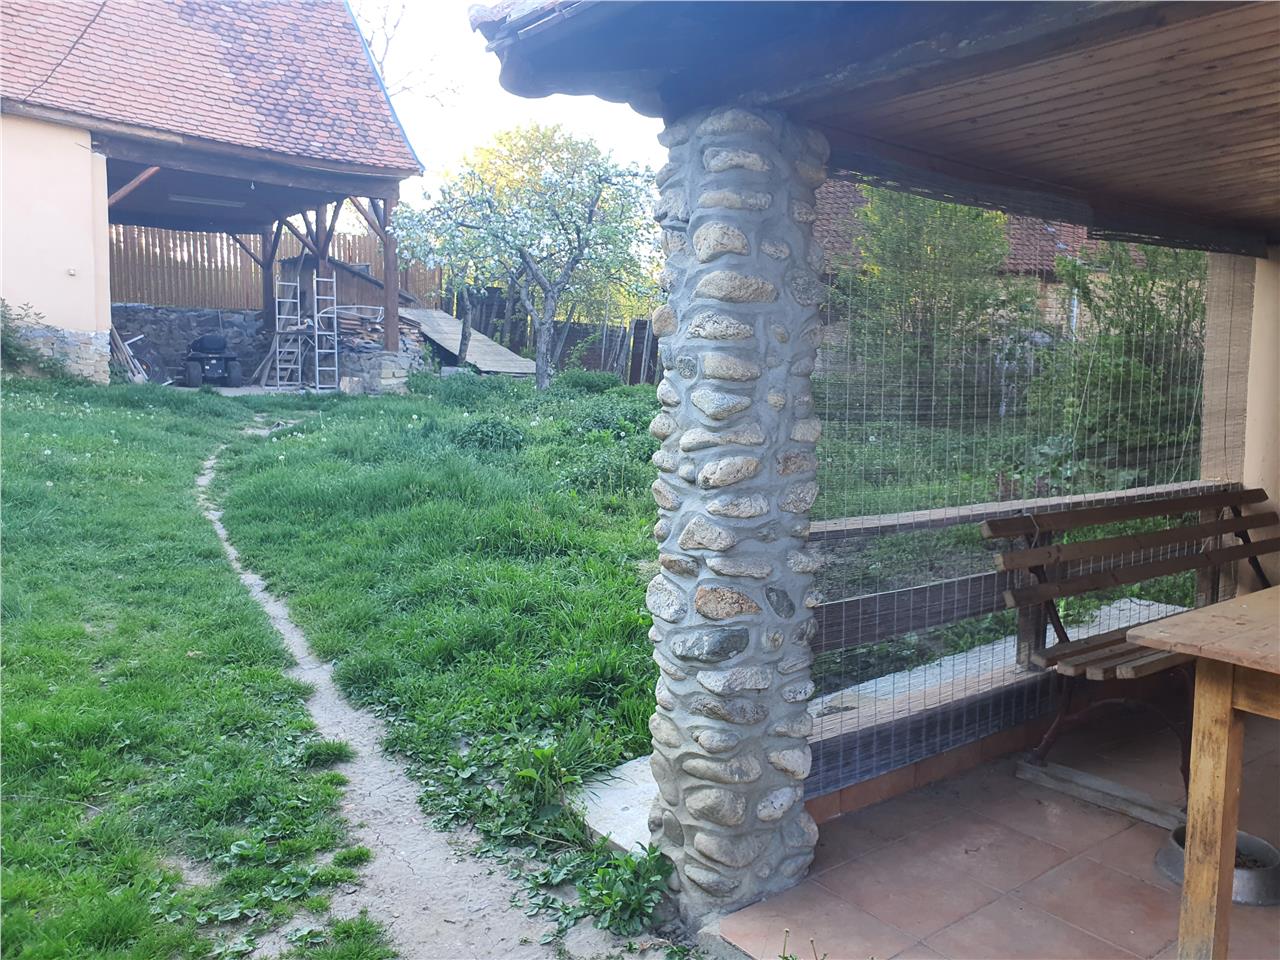 Casa singur in curte cu livada pe rod in Aciliu,1600mp teren total